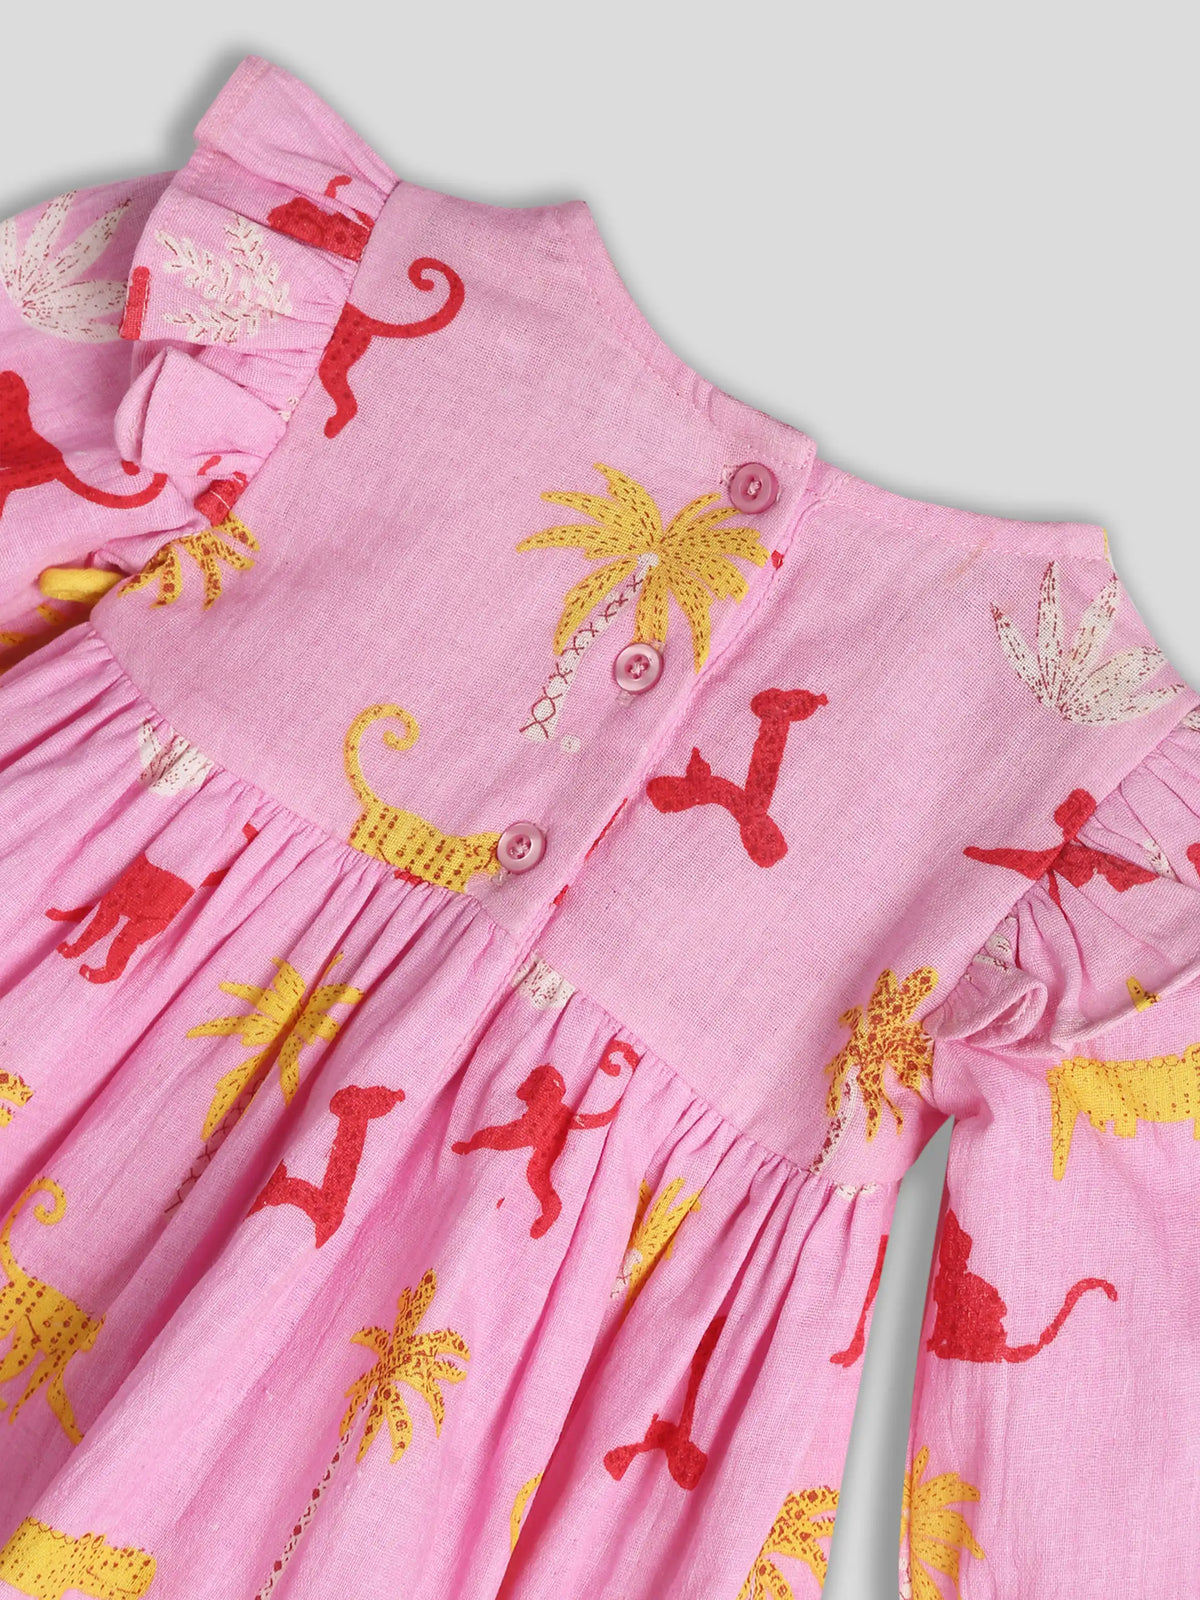 Pink Printed Panchatantra Dress Somersault